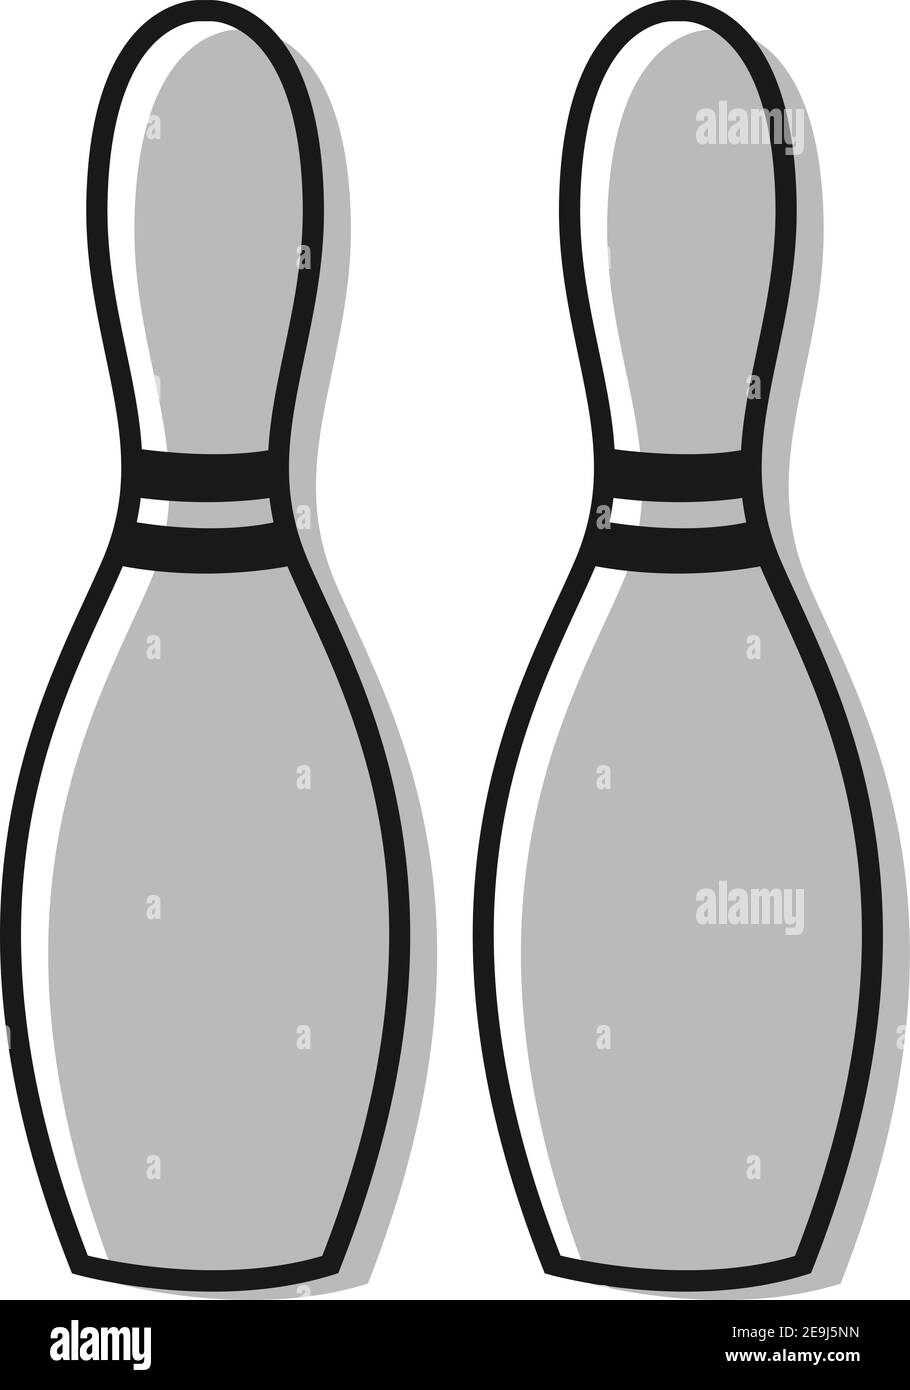 Bowling Pins, Illustration, Vektor auf weißem Hintergrund. Stock Vektor